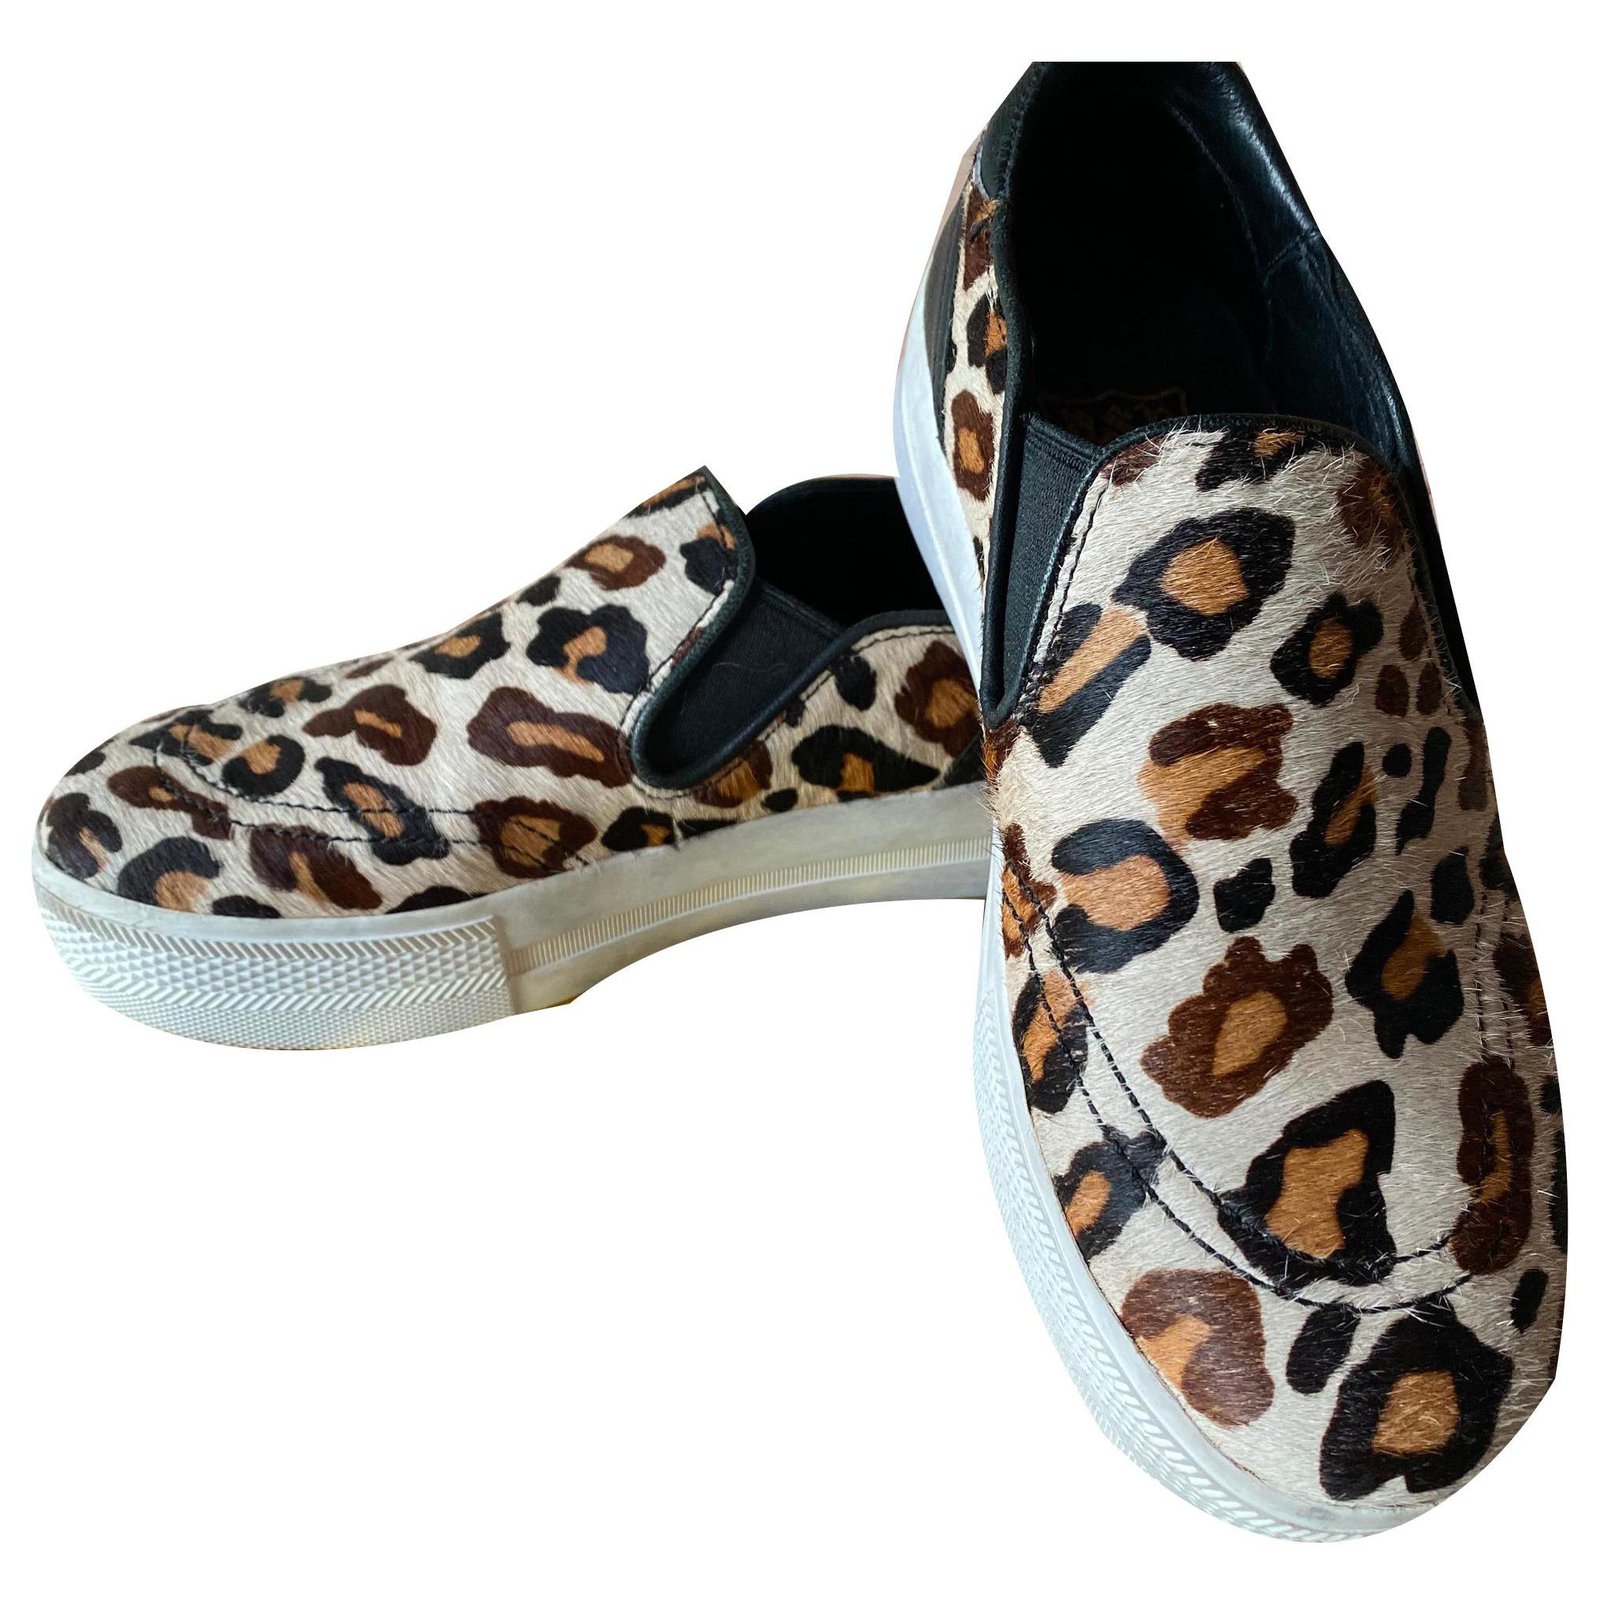 ash sneakers leopard